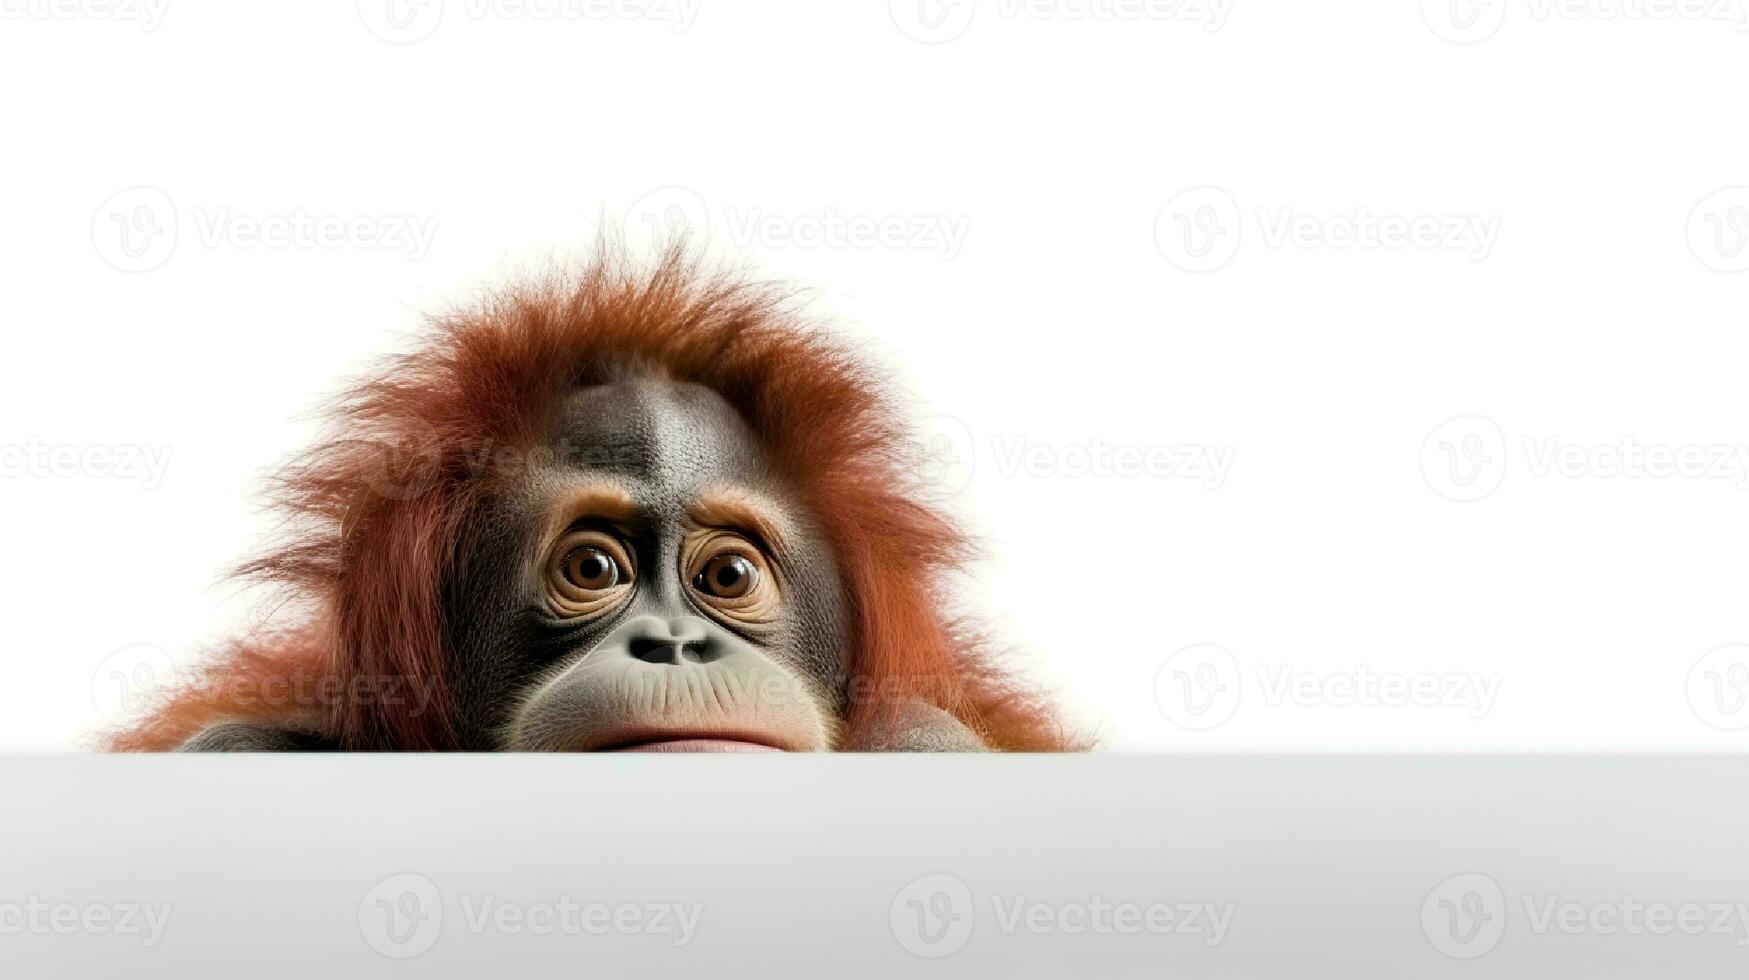 Photo of a orangutan on white background